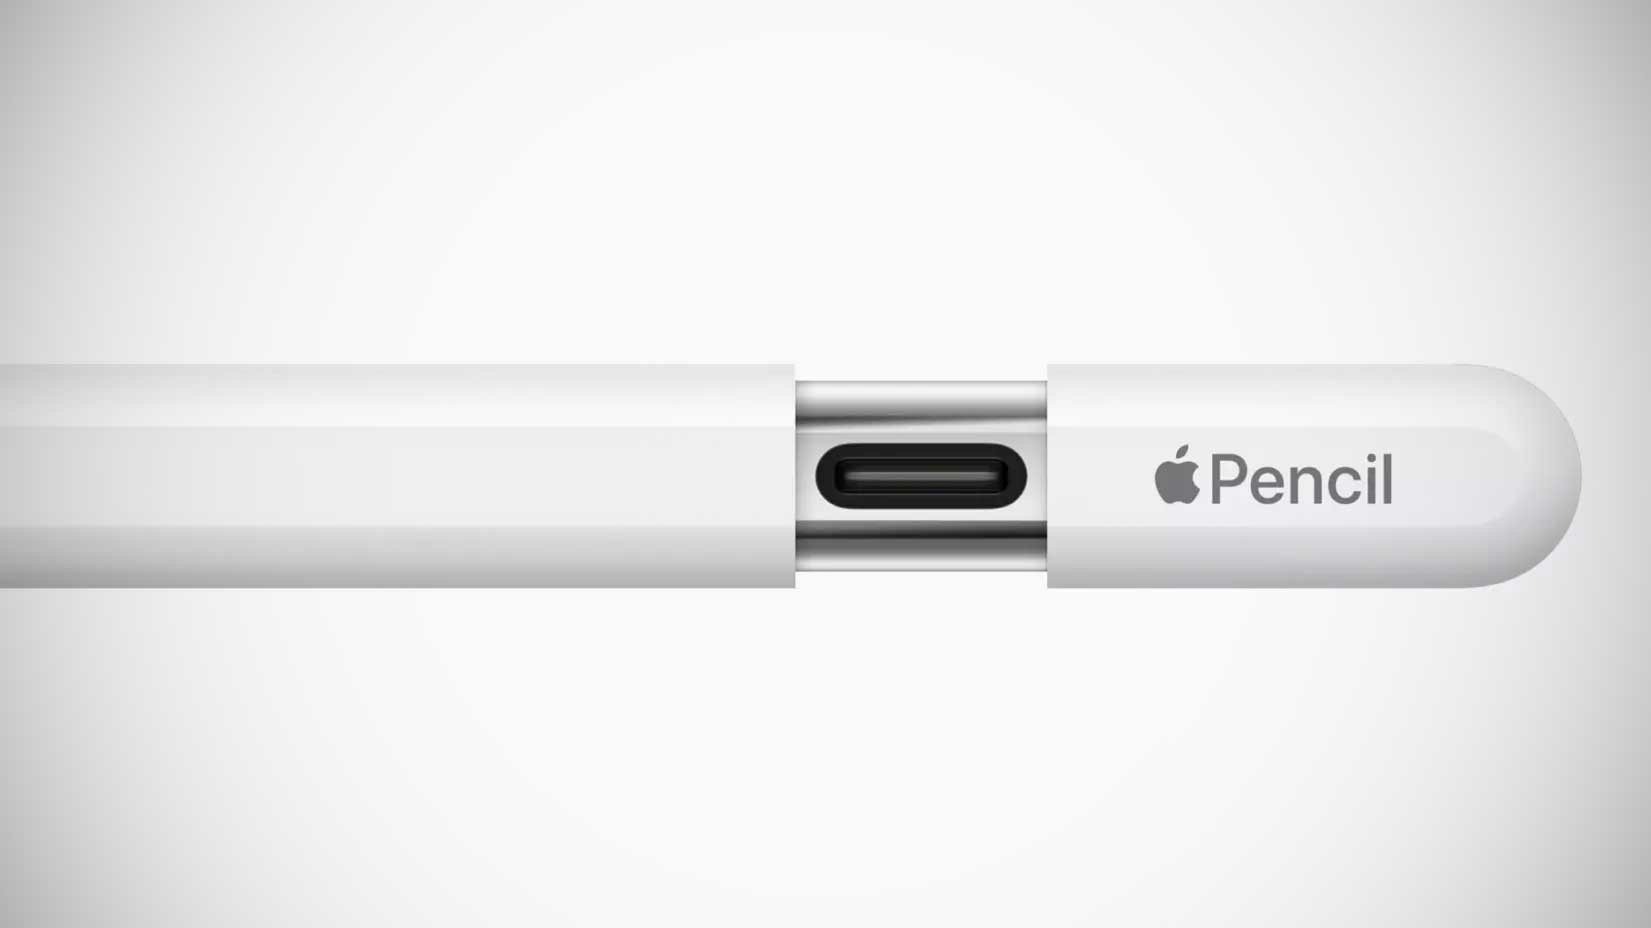 Neuer Apple Pencil mit USB-C: Apple schraubt am Preis | heise online